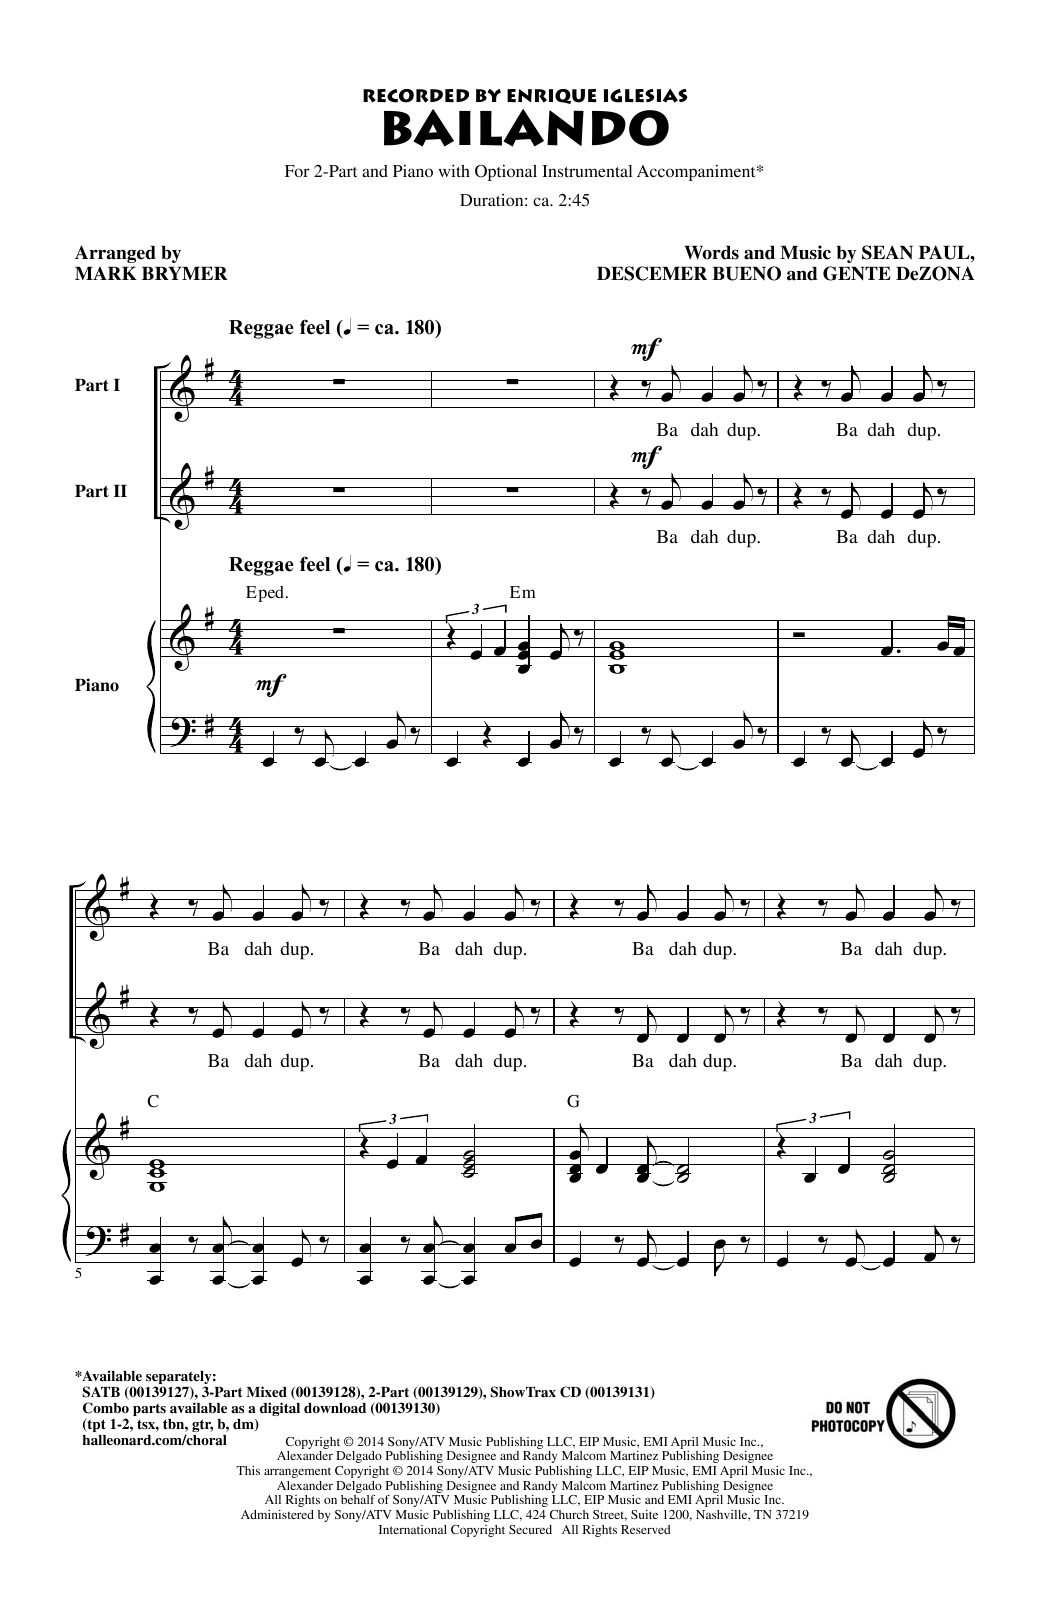 Enrique Iglesias Featuring Descemer Bueno and Gente de Zona Bailando (arr. Mark Brymer) Sheet Music Notes & Chords for 2-Part Choir - Download or Print PDF